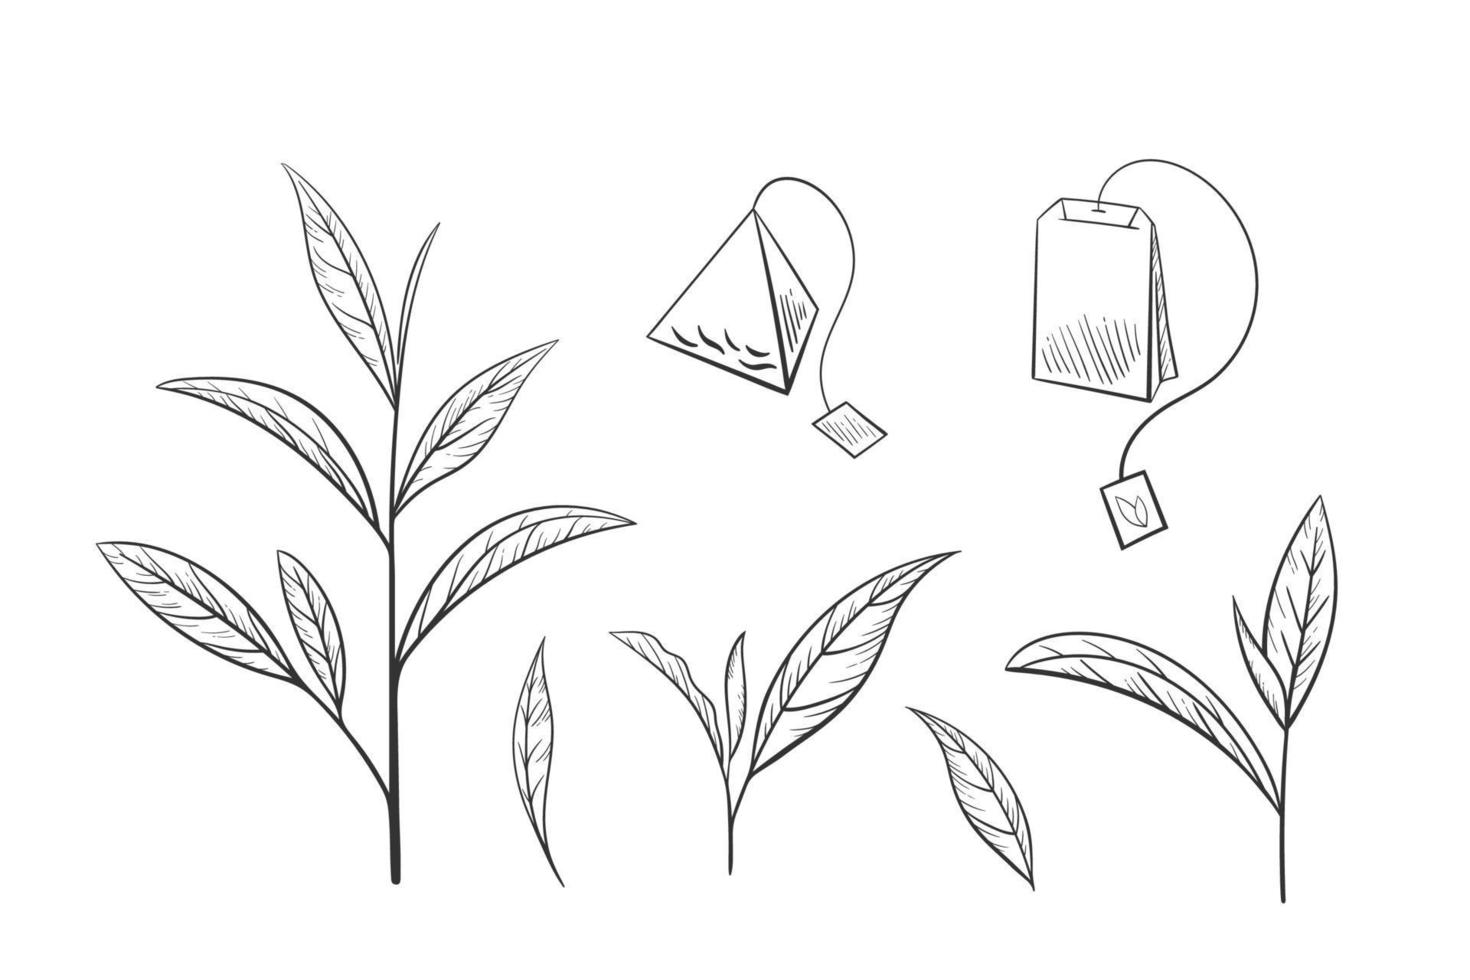 handritad set grönt te blad siluett. skissa ekologisk mat och dryck. vektor illustration, isolerade svarta element på en vit bakgrund.